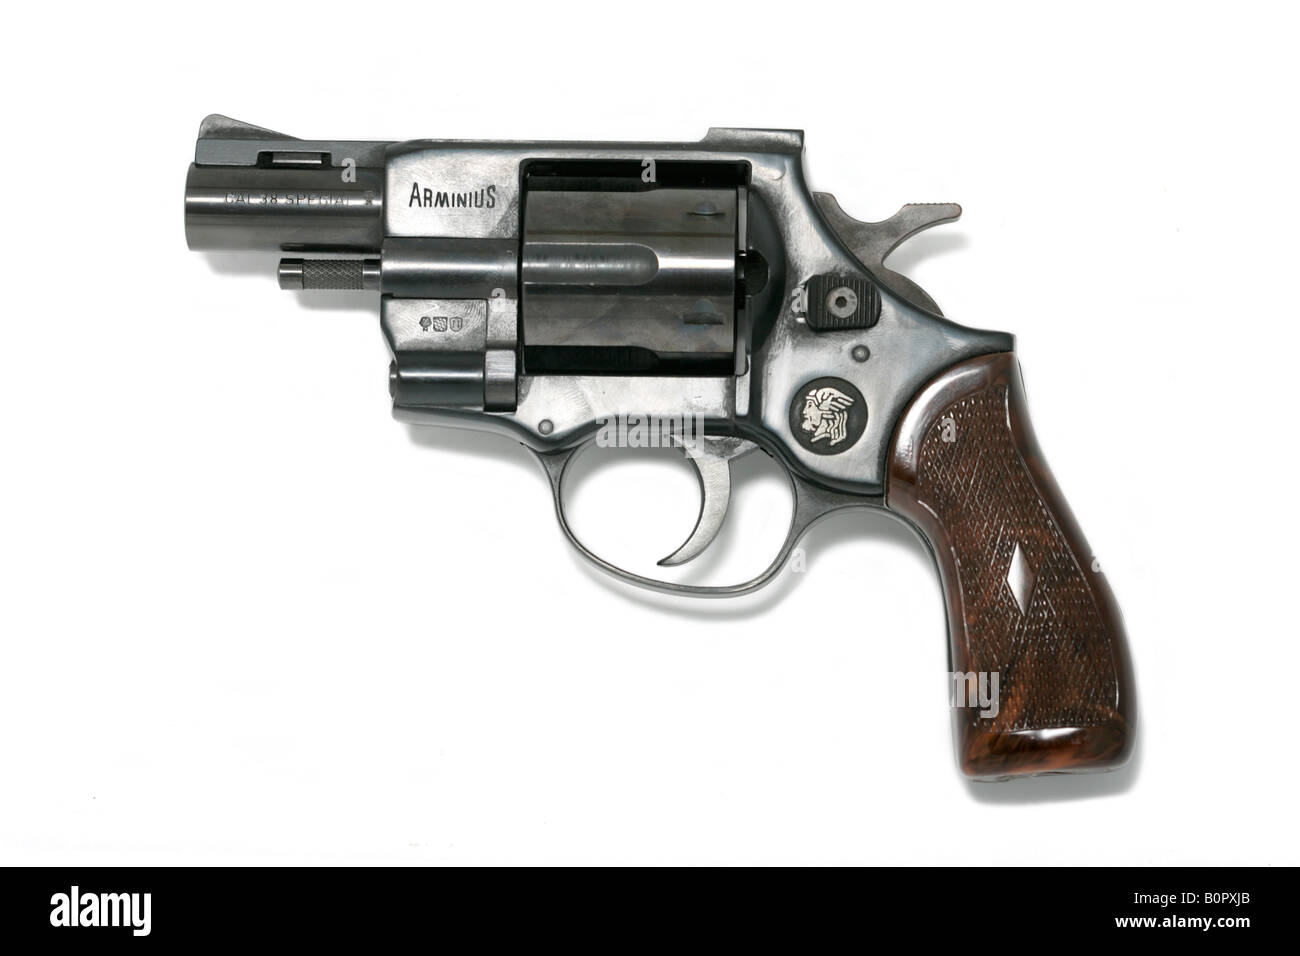 arminius revolver